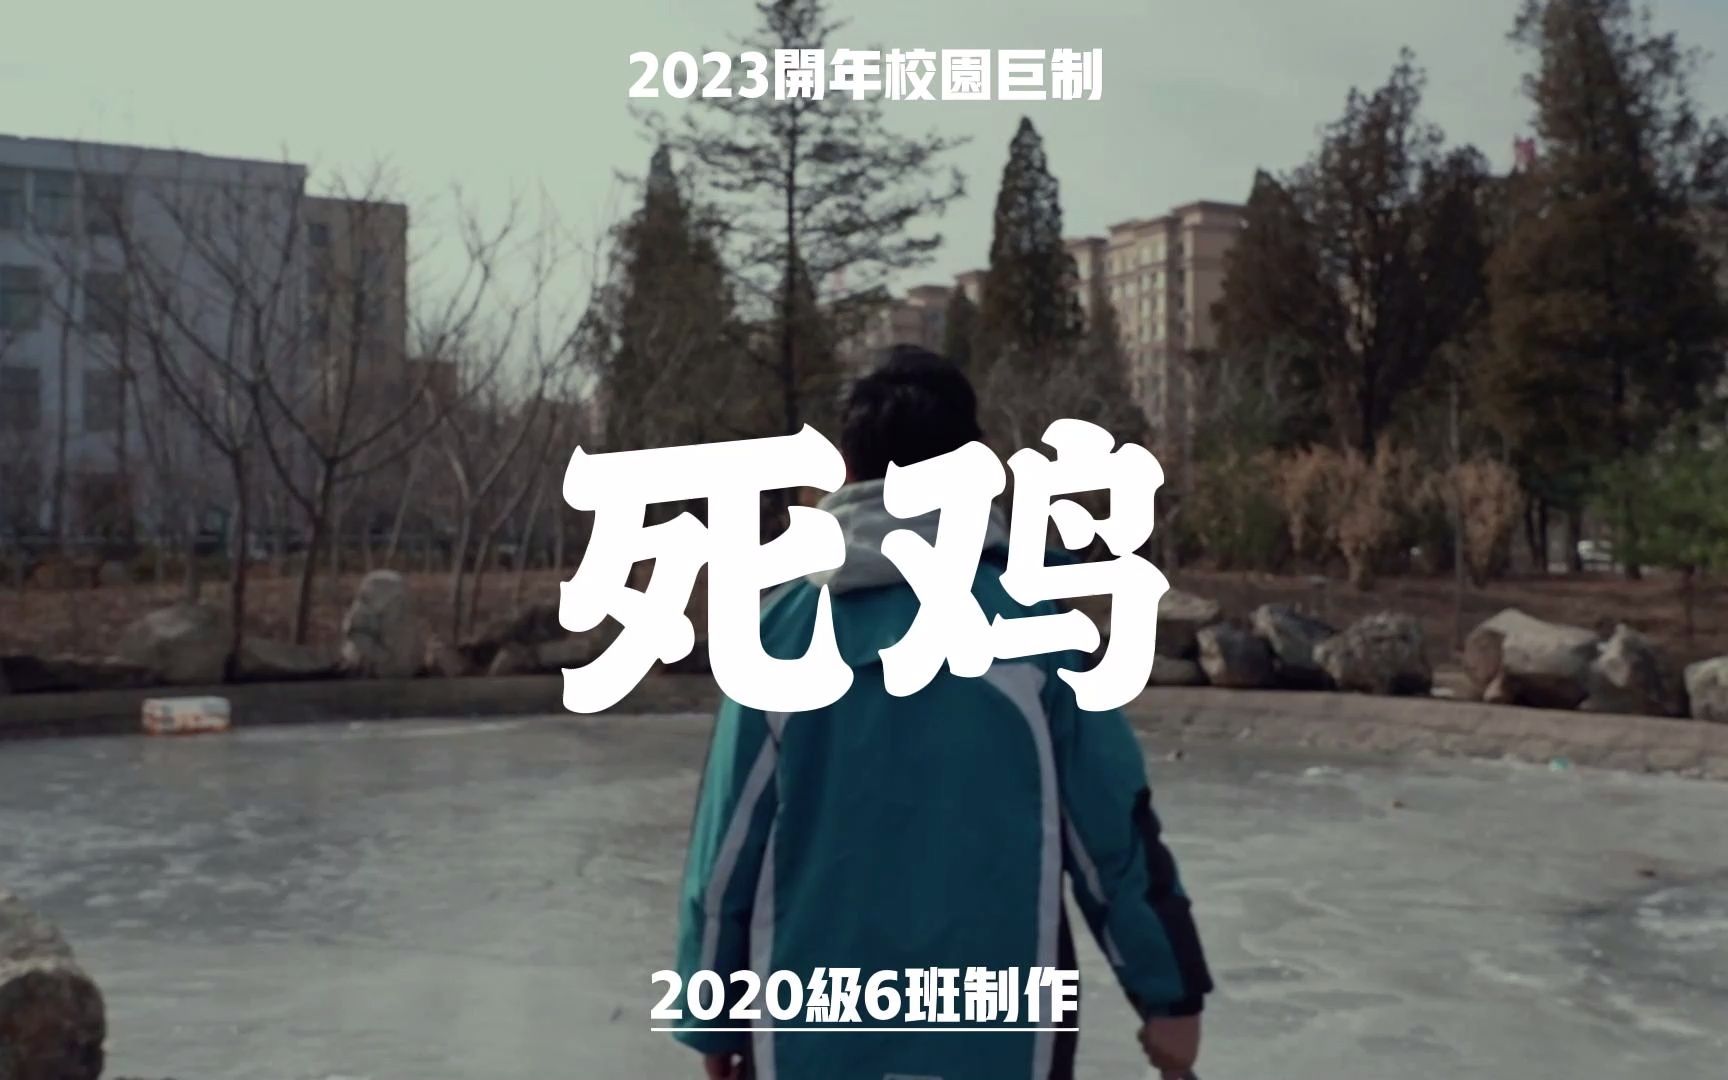 2023开年巨制——丹东二中校园悬疑短片《死鸡》